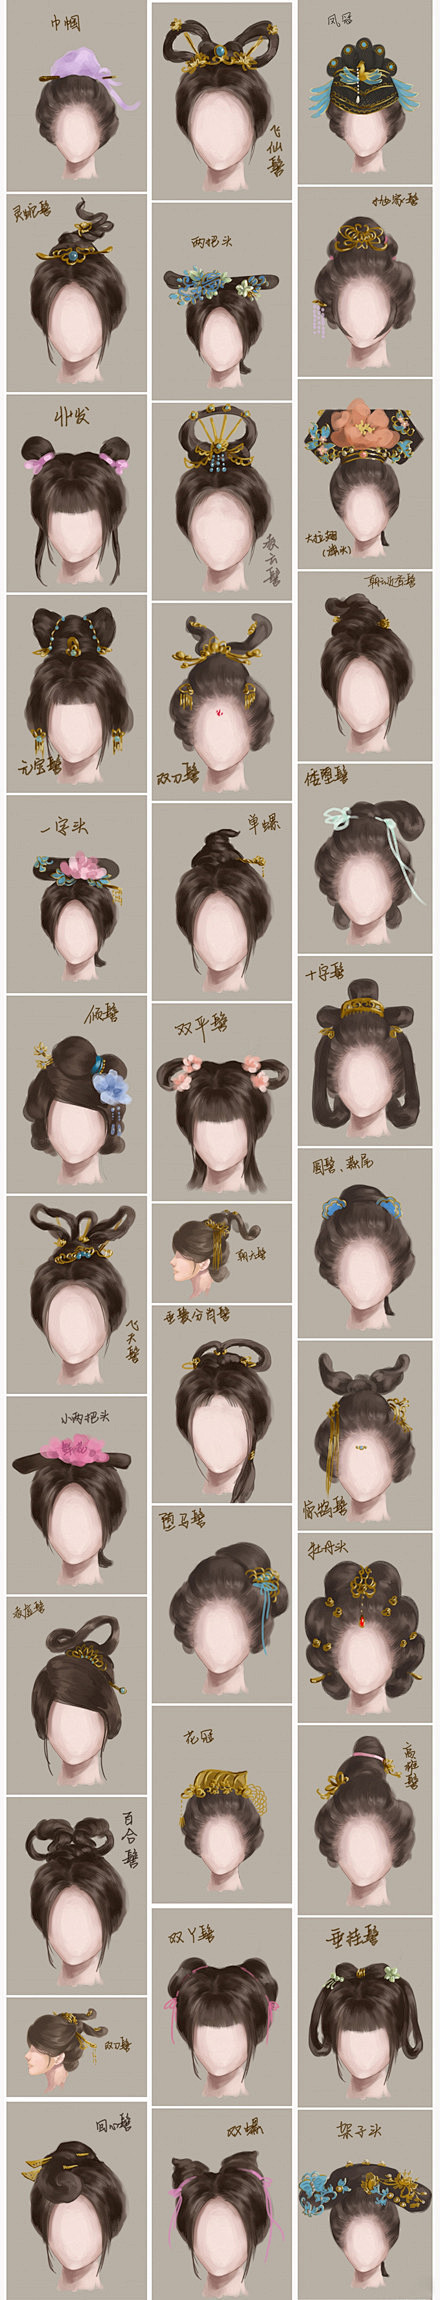 中国传统发型~~~